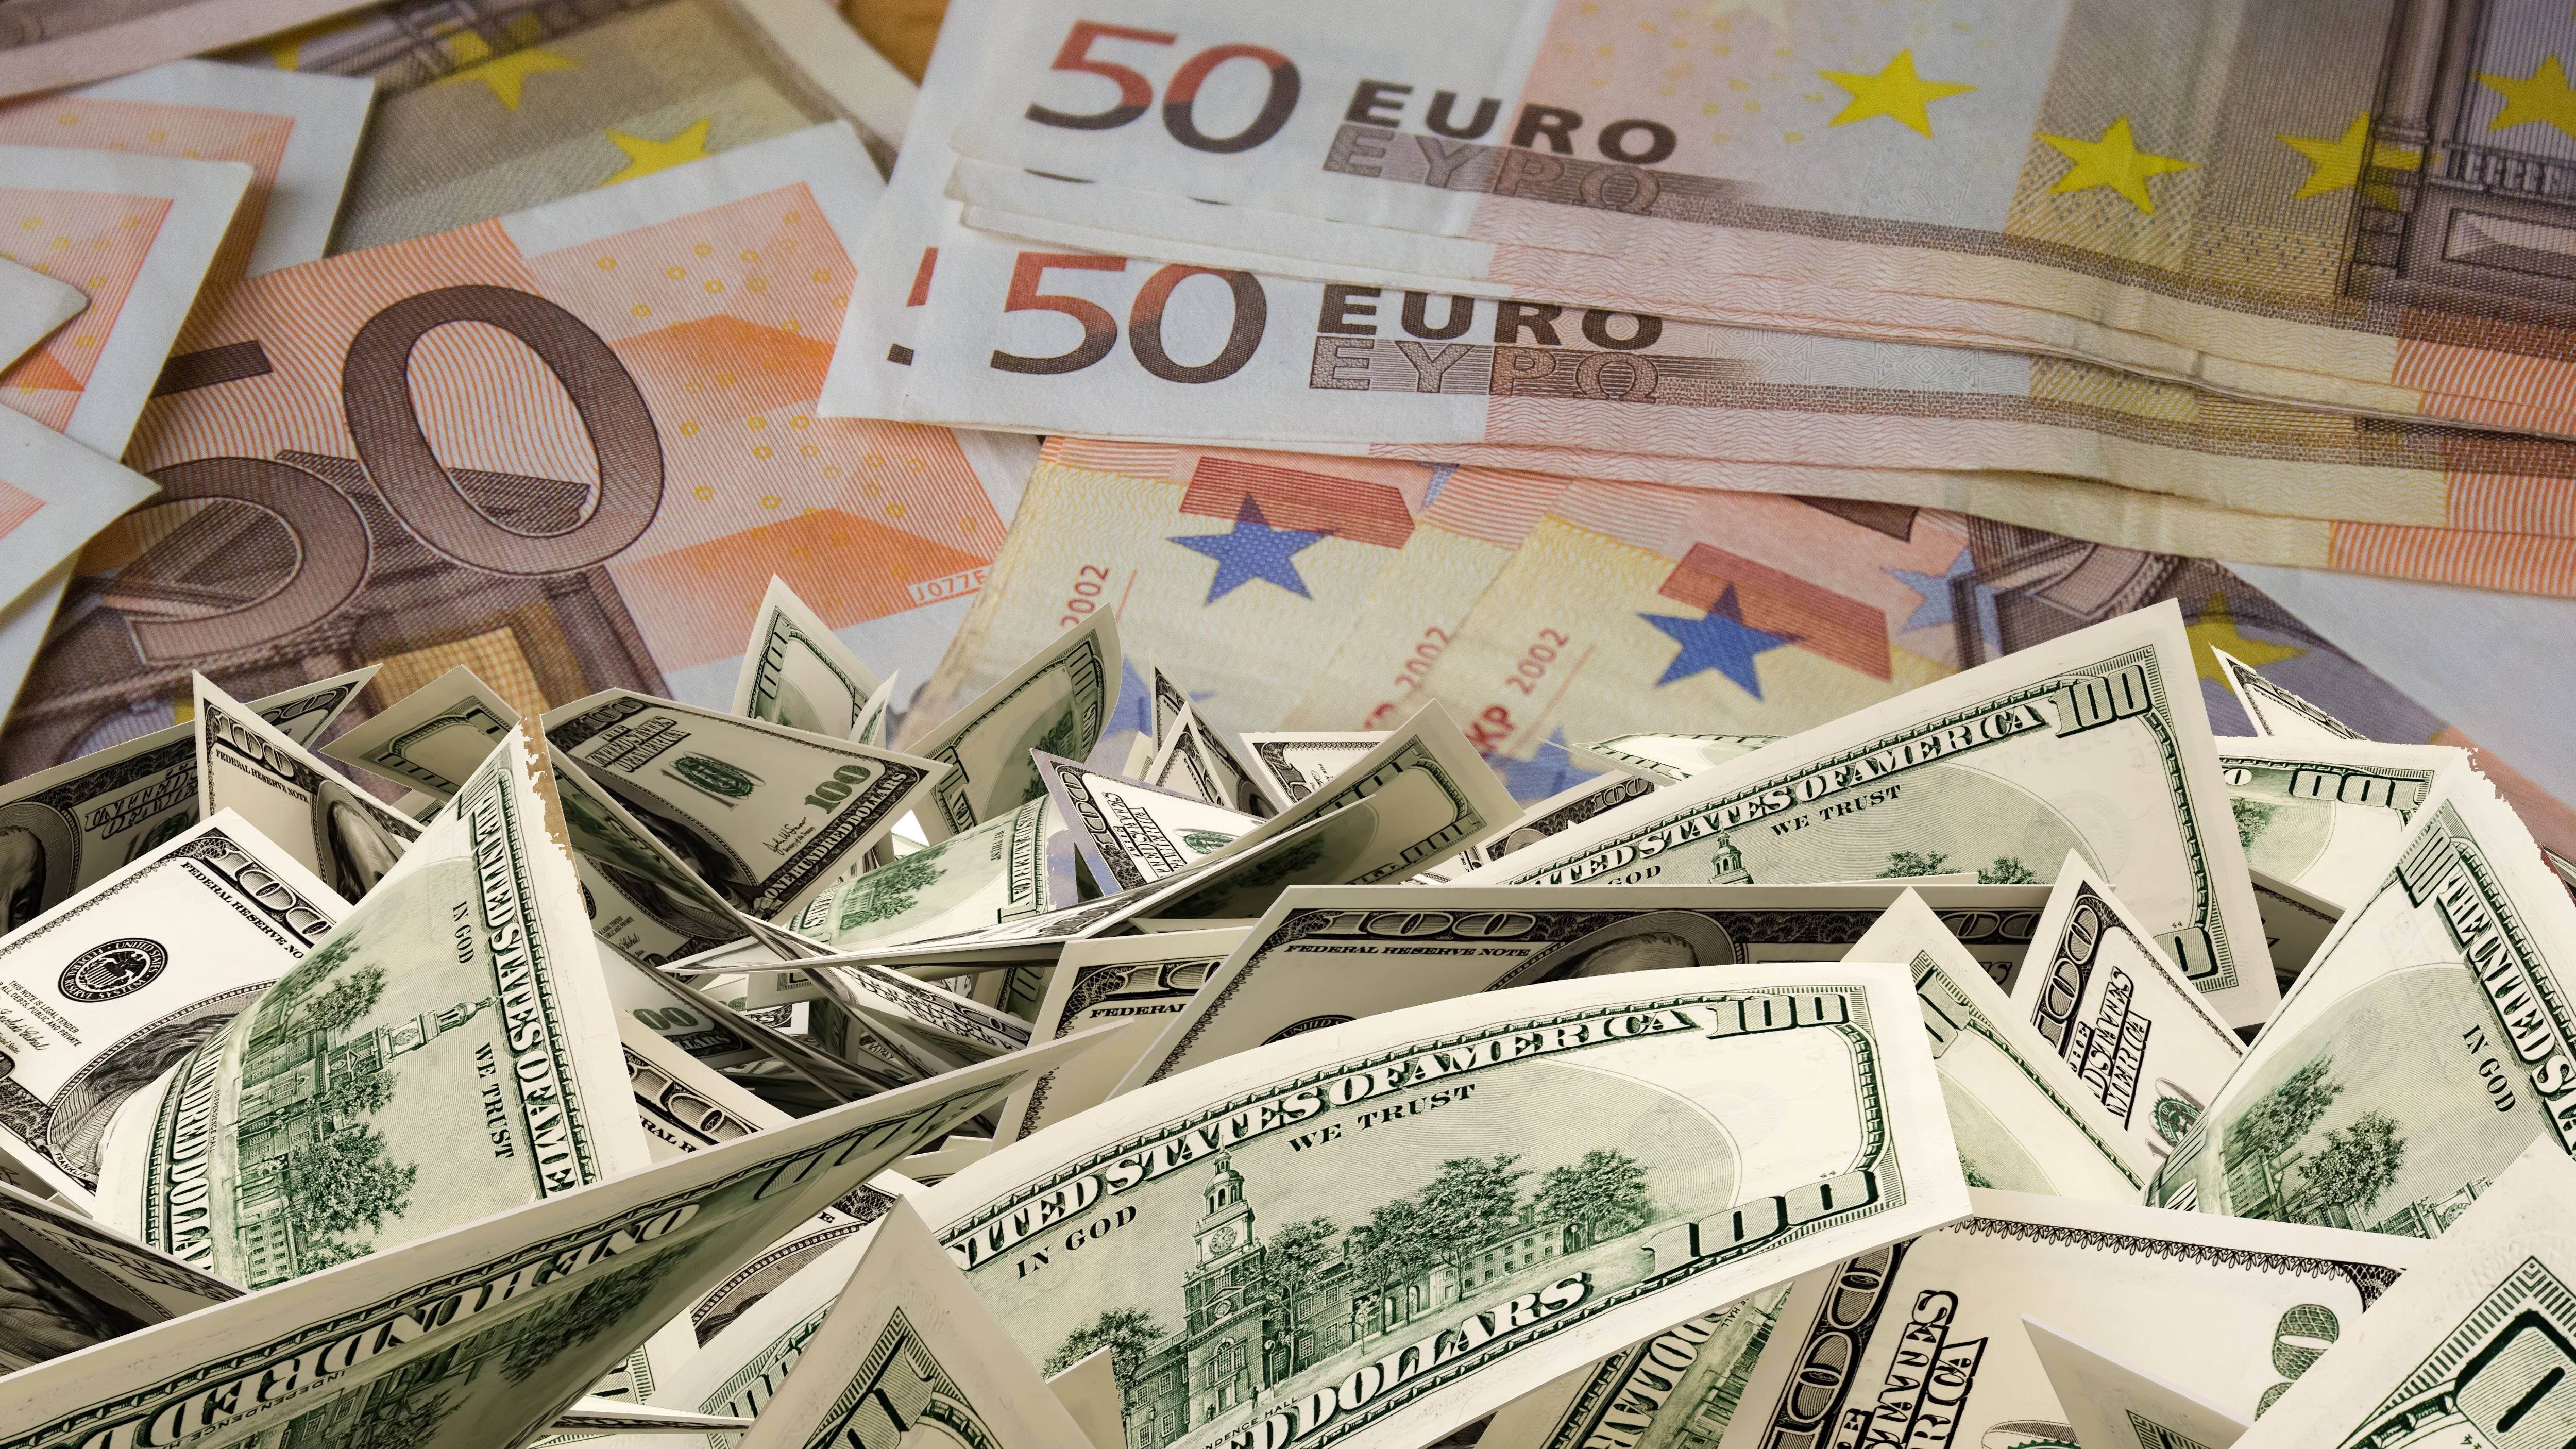 Обмен евро на доллары. Доллар и евро. Торговля в евро и долларах. Доллар обмен. Куплю доллары и евро.